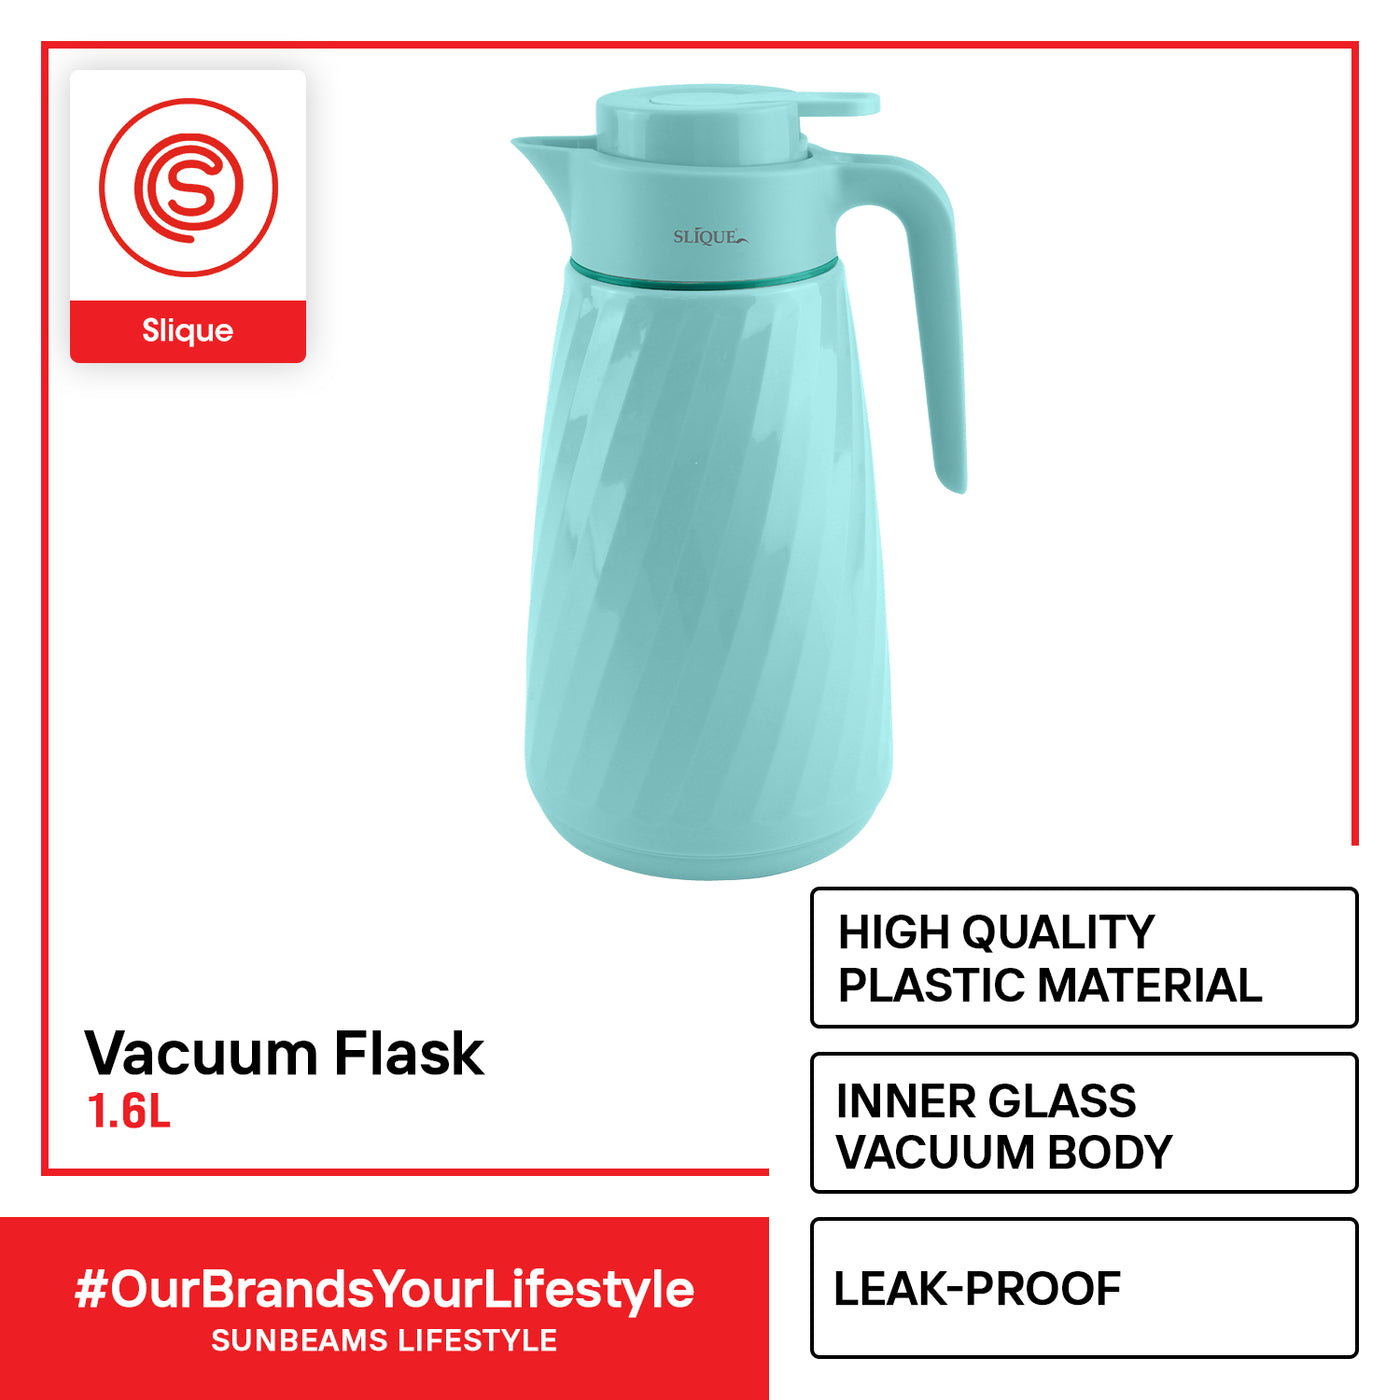 SLIQUE Premium Vacuum Flask 1600ml Modern Italian Design Amazing Gift Idea For Any Occasion! (Turquoise)